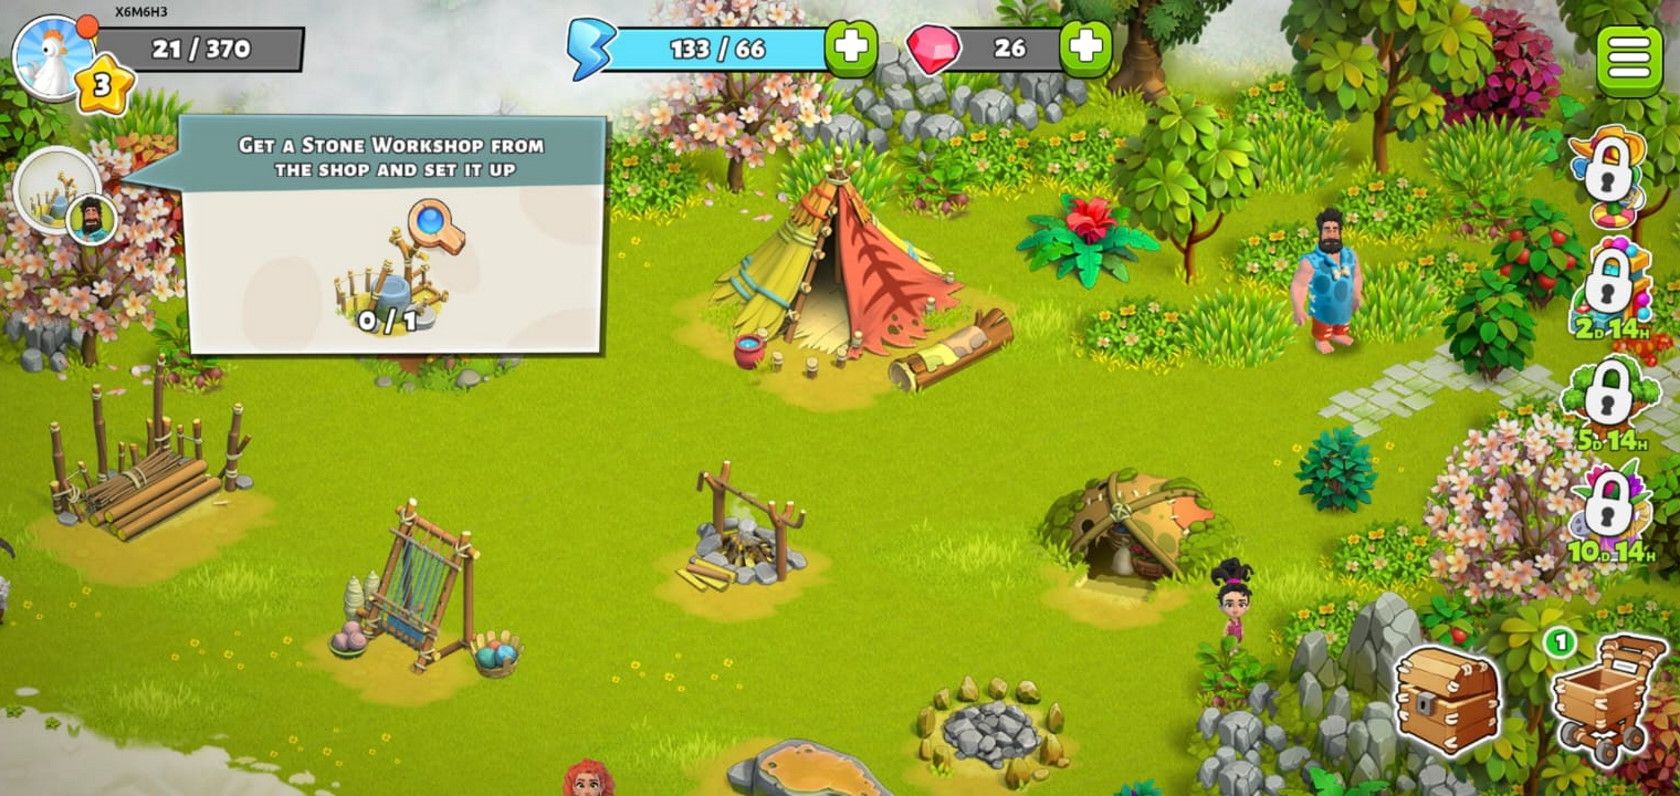 family island mobile game setting up desert island